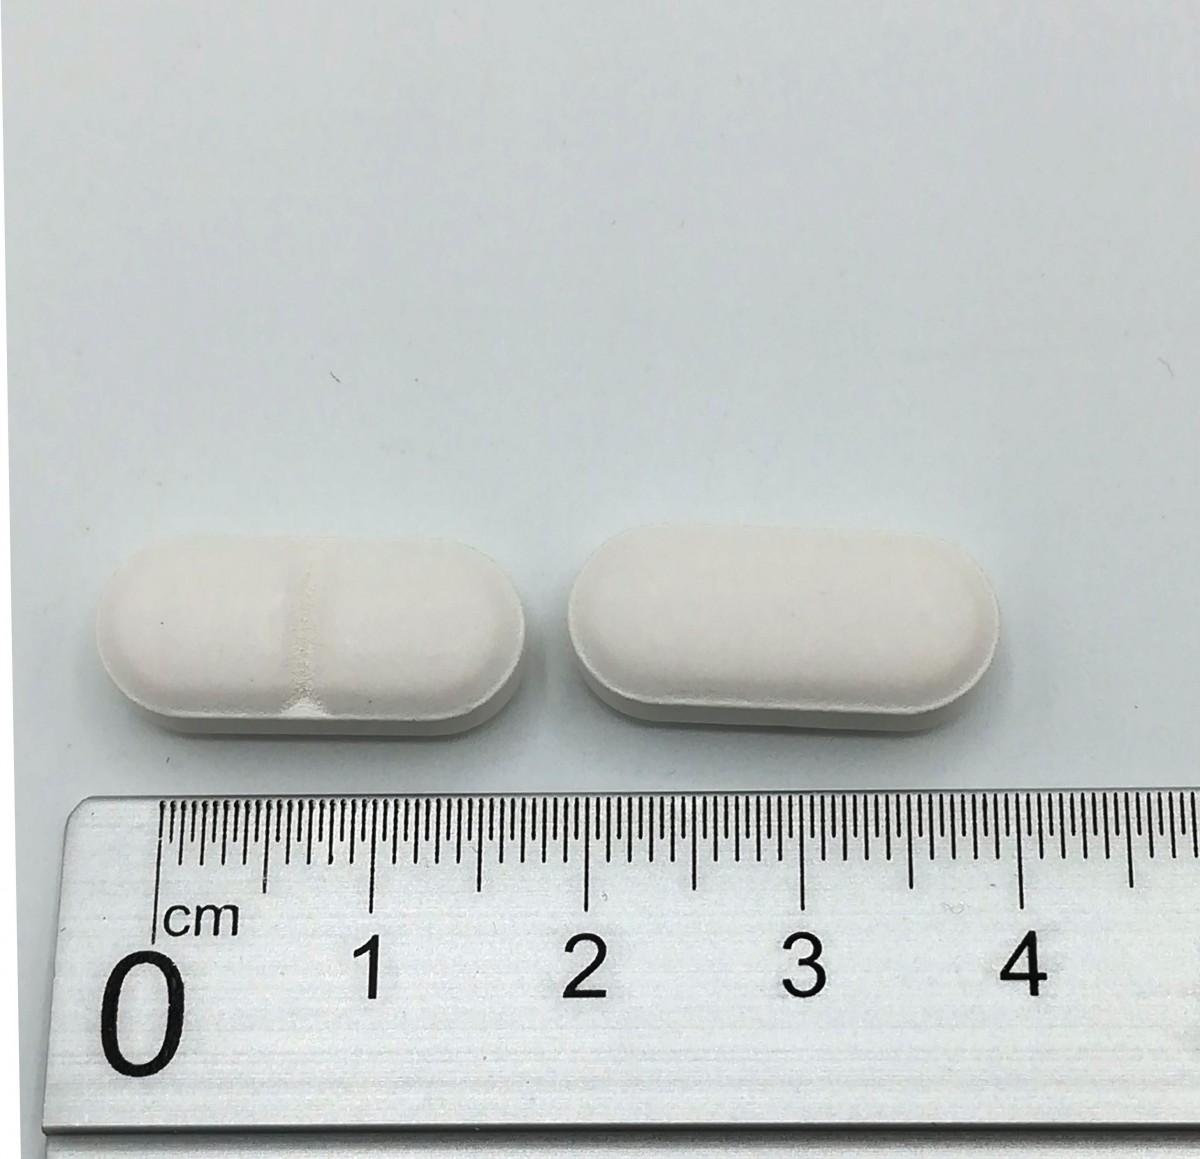 AMOXICILINA/ACIDO CLAVULANICO NORMON 500 mg /125 mg COMPRIMIDOS RECUBIERTOS CON PELICULA EFG, 12 comprimidos fotografía de la forma farmacéutica.